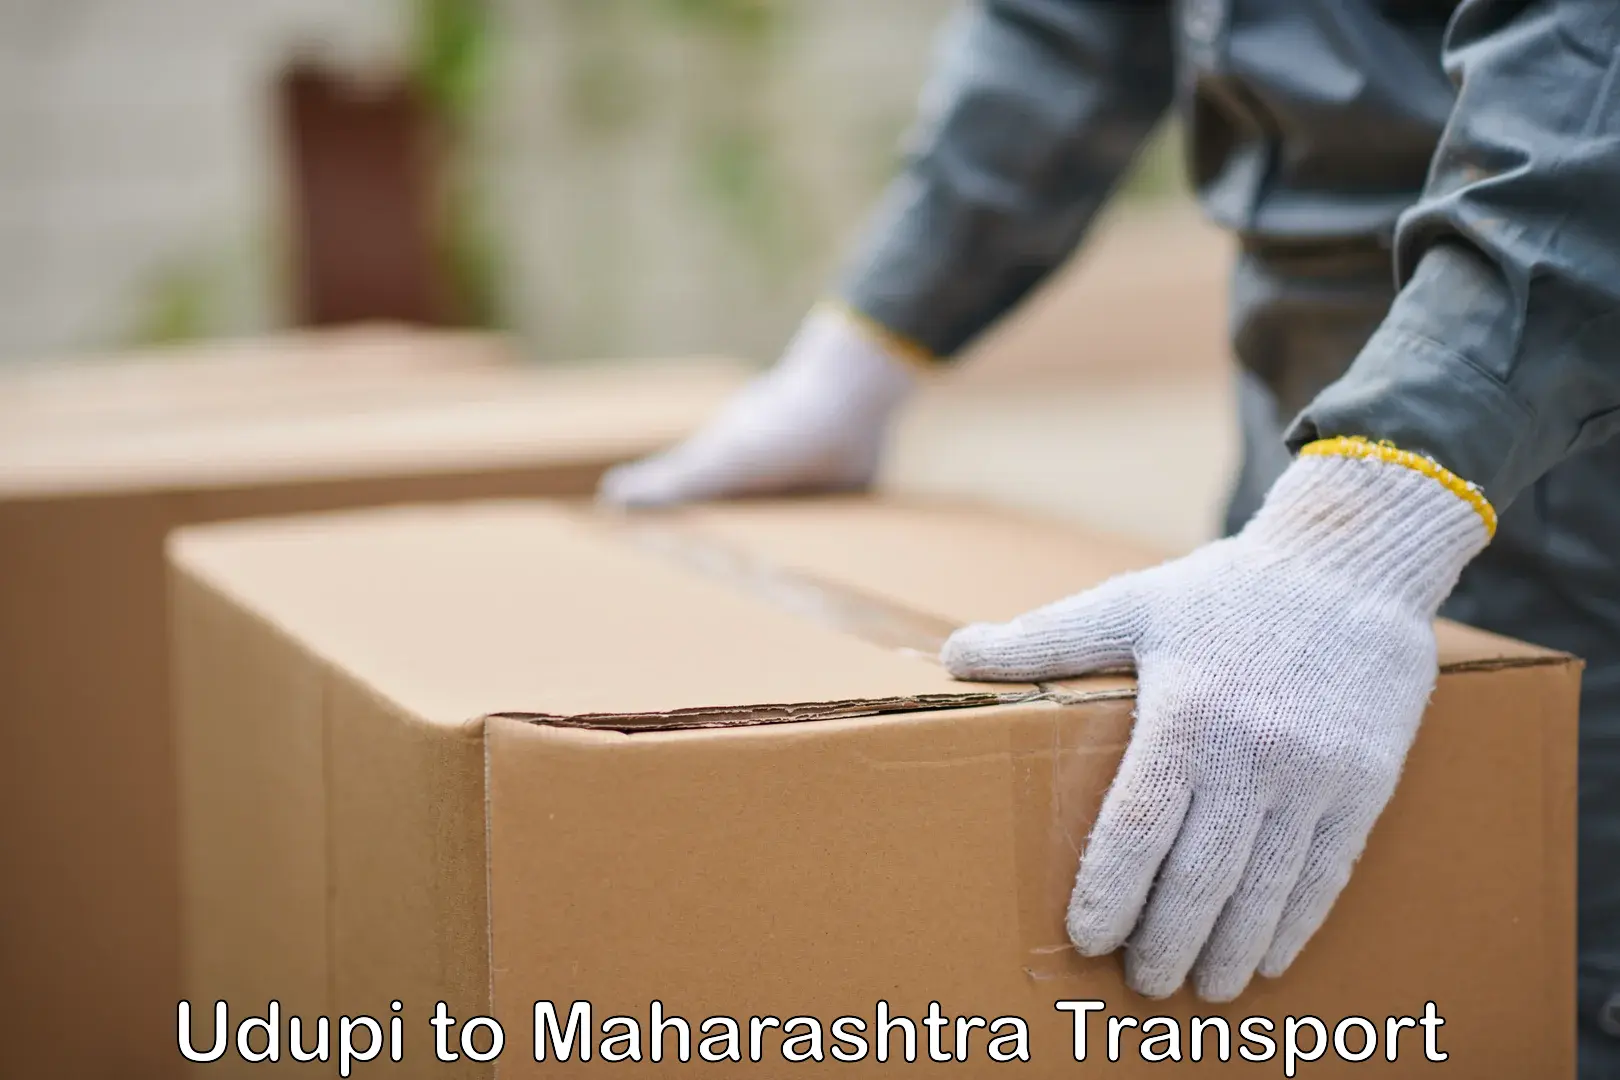 Lorry transport service Udupi to Maharashtra